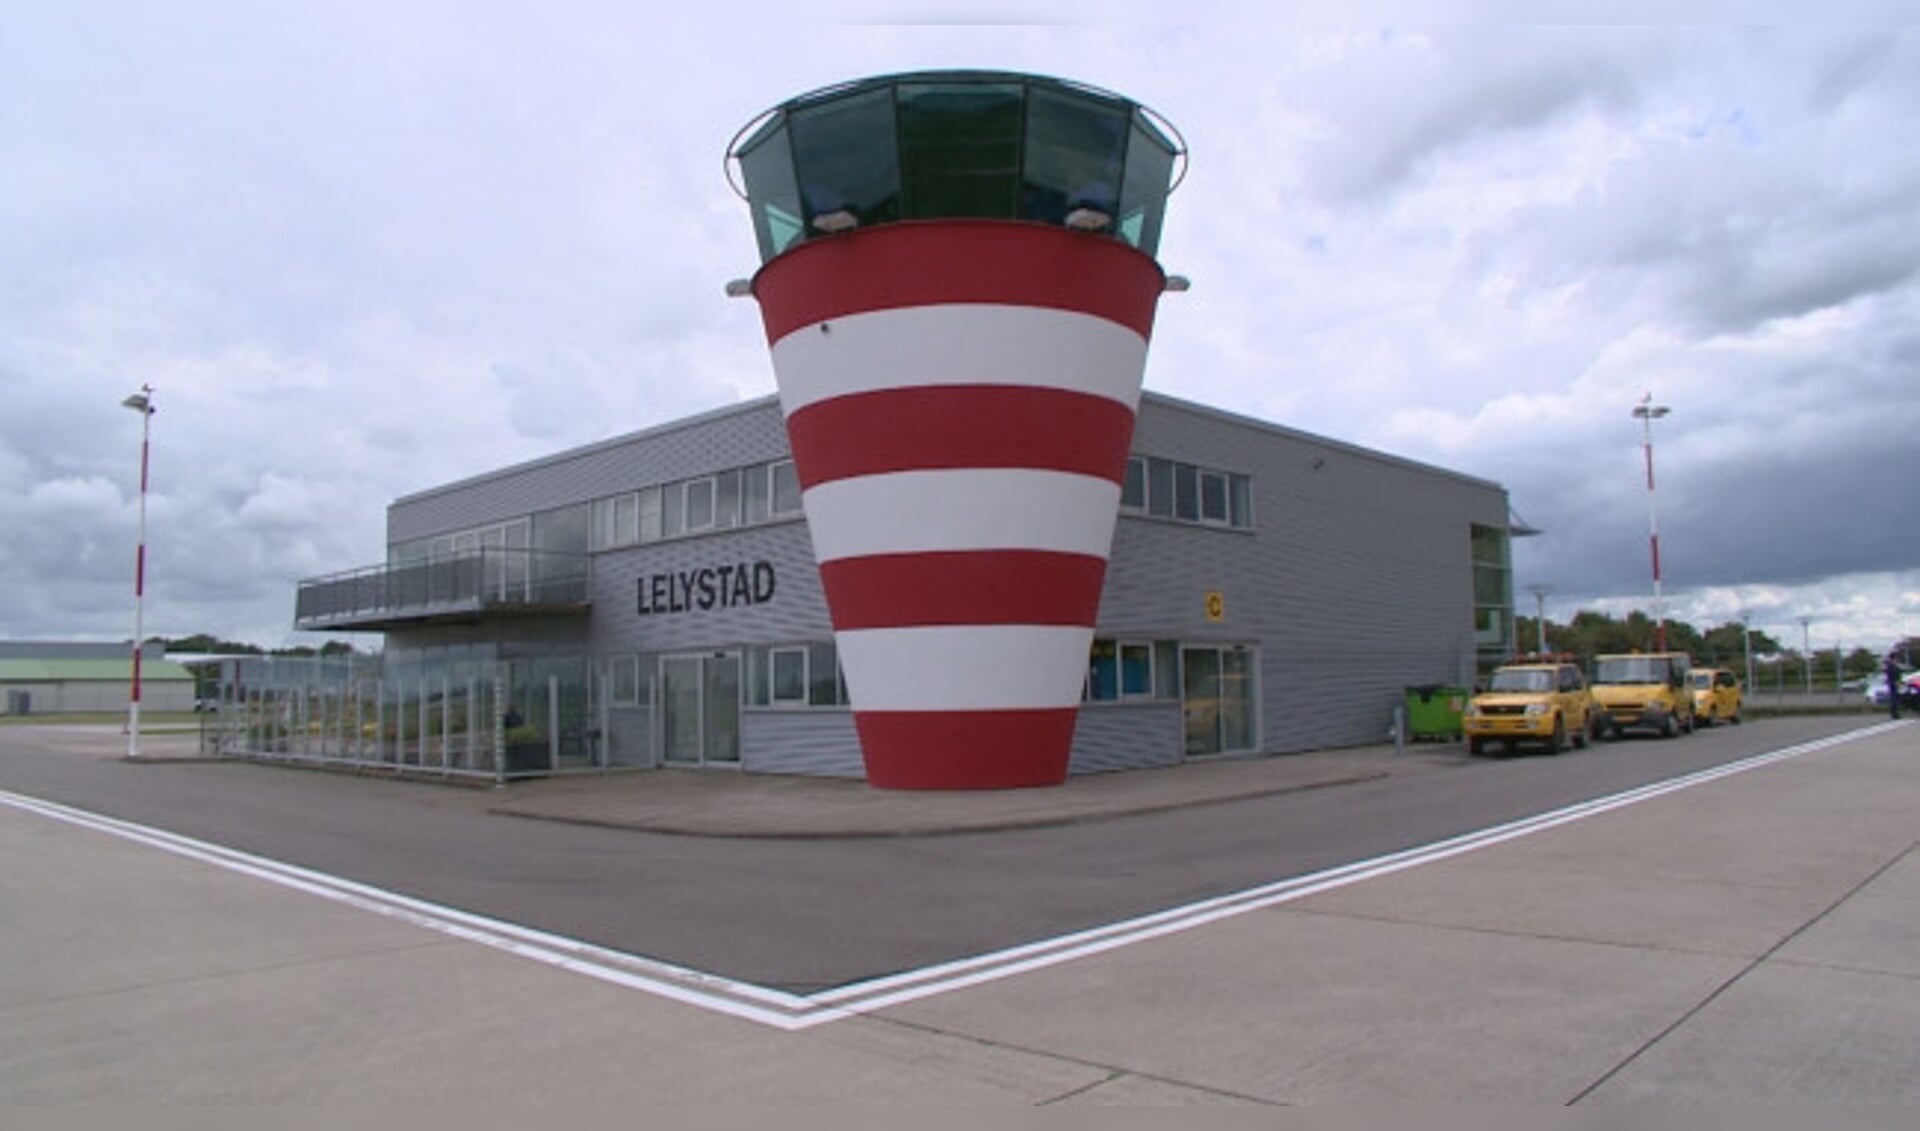  Vliegveld Lelystad